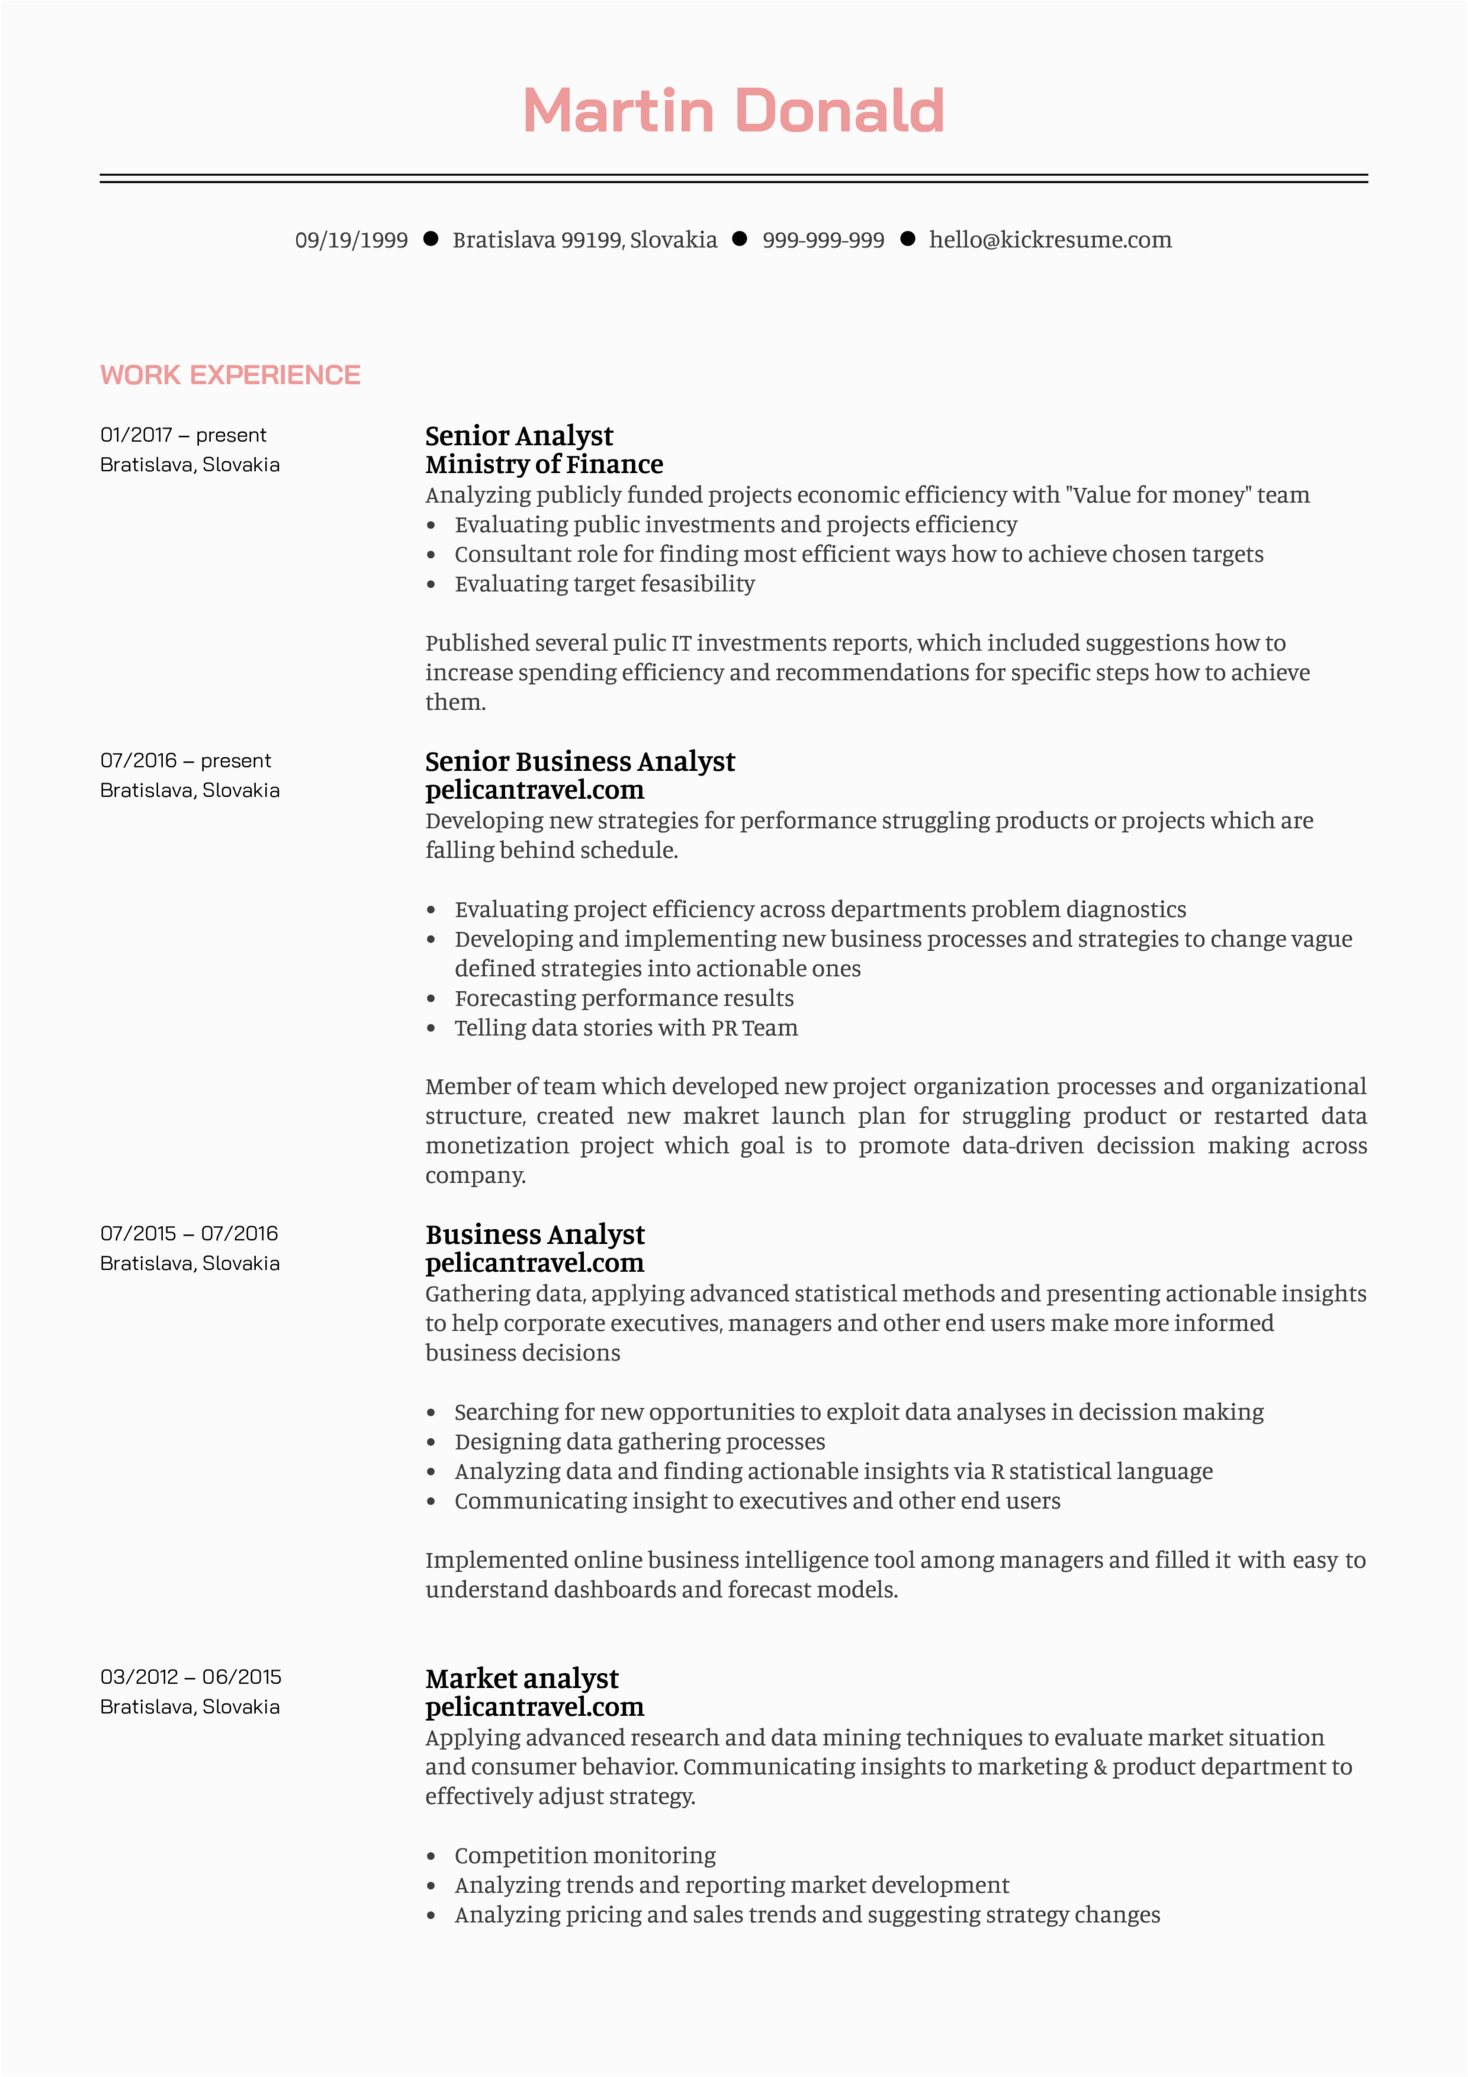 Sample Resume for Senior Business Analyst Senior Business Analyst Resume Example